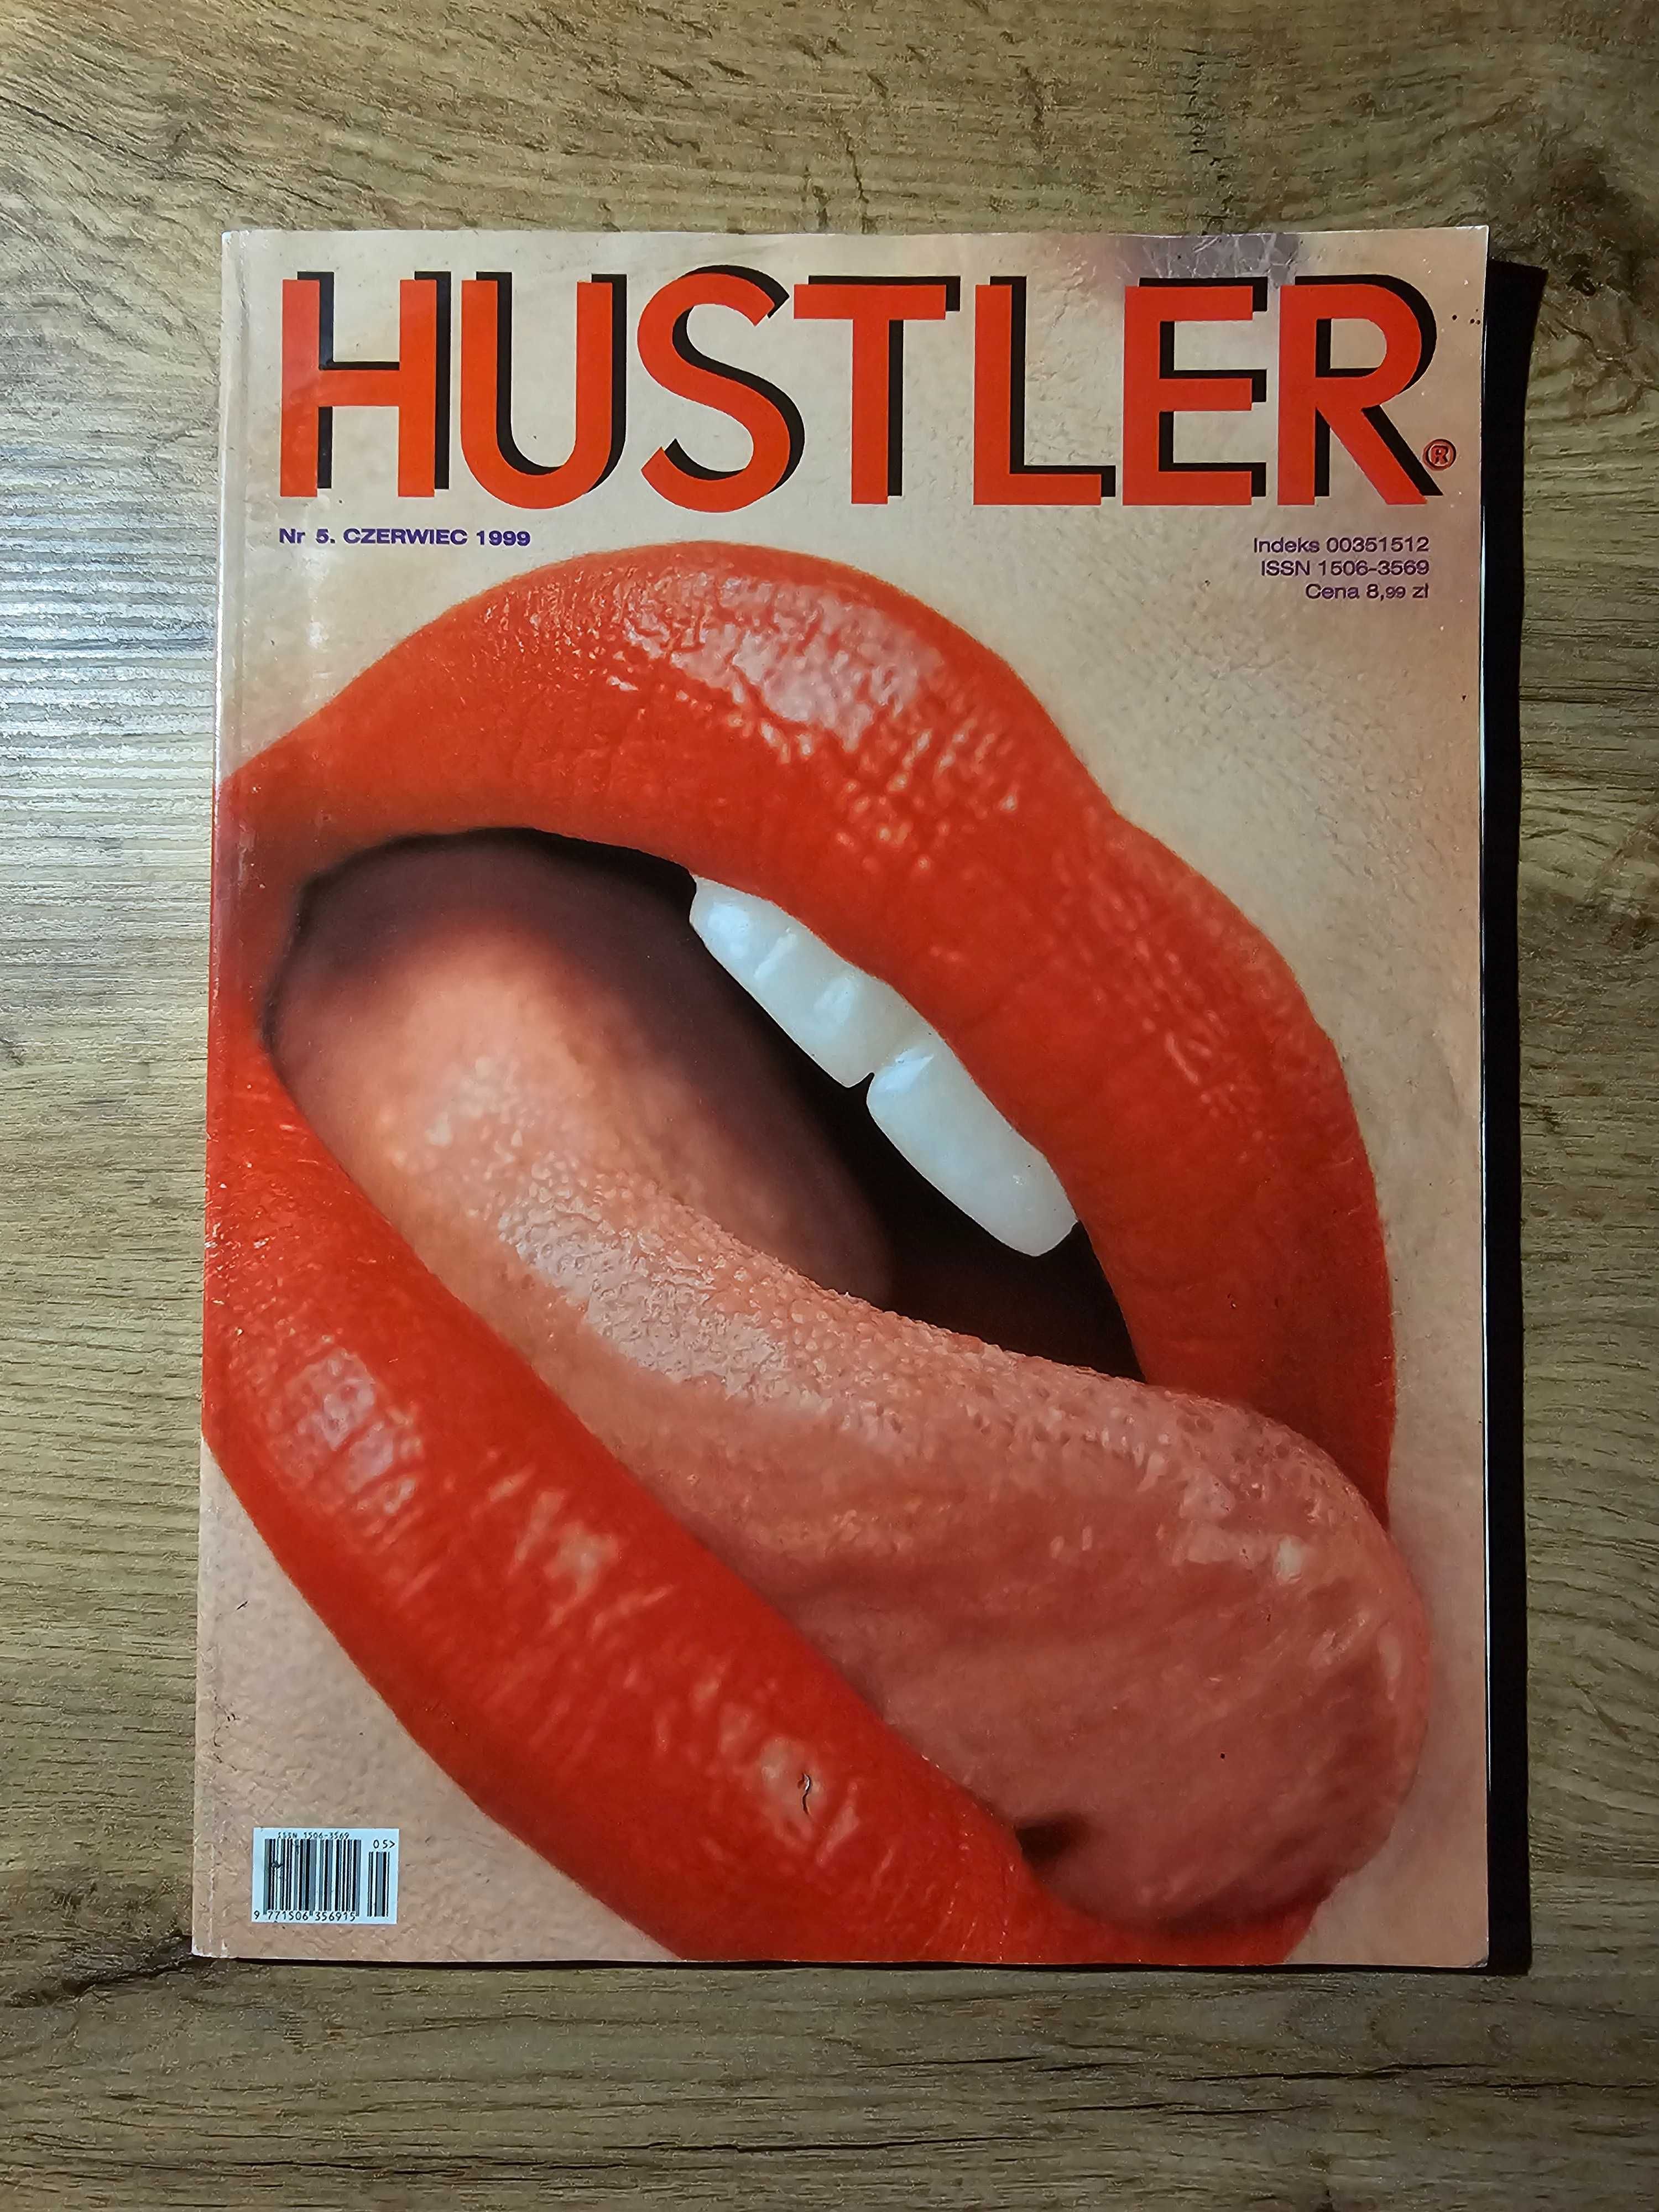 UNIKAT! Hustler nr 5 czerwiec 1999 - Czasopismo dla dorosłych